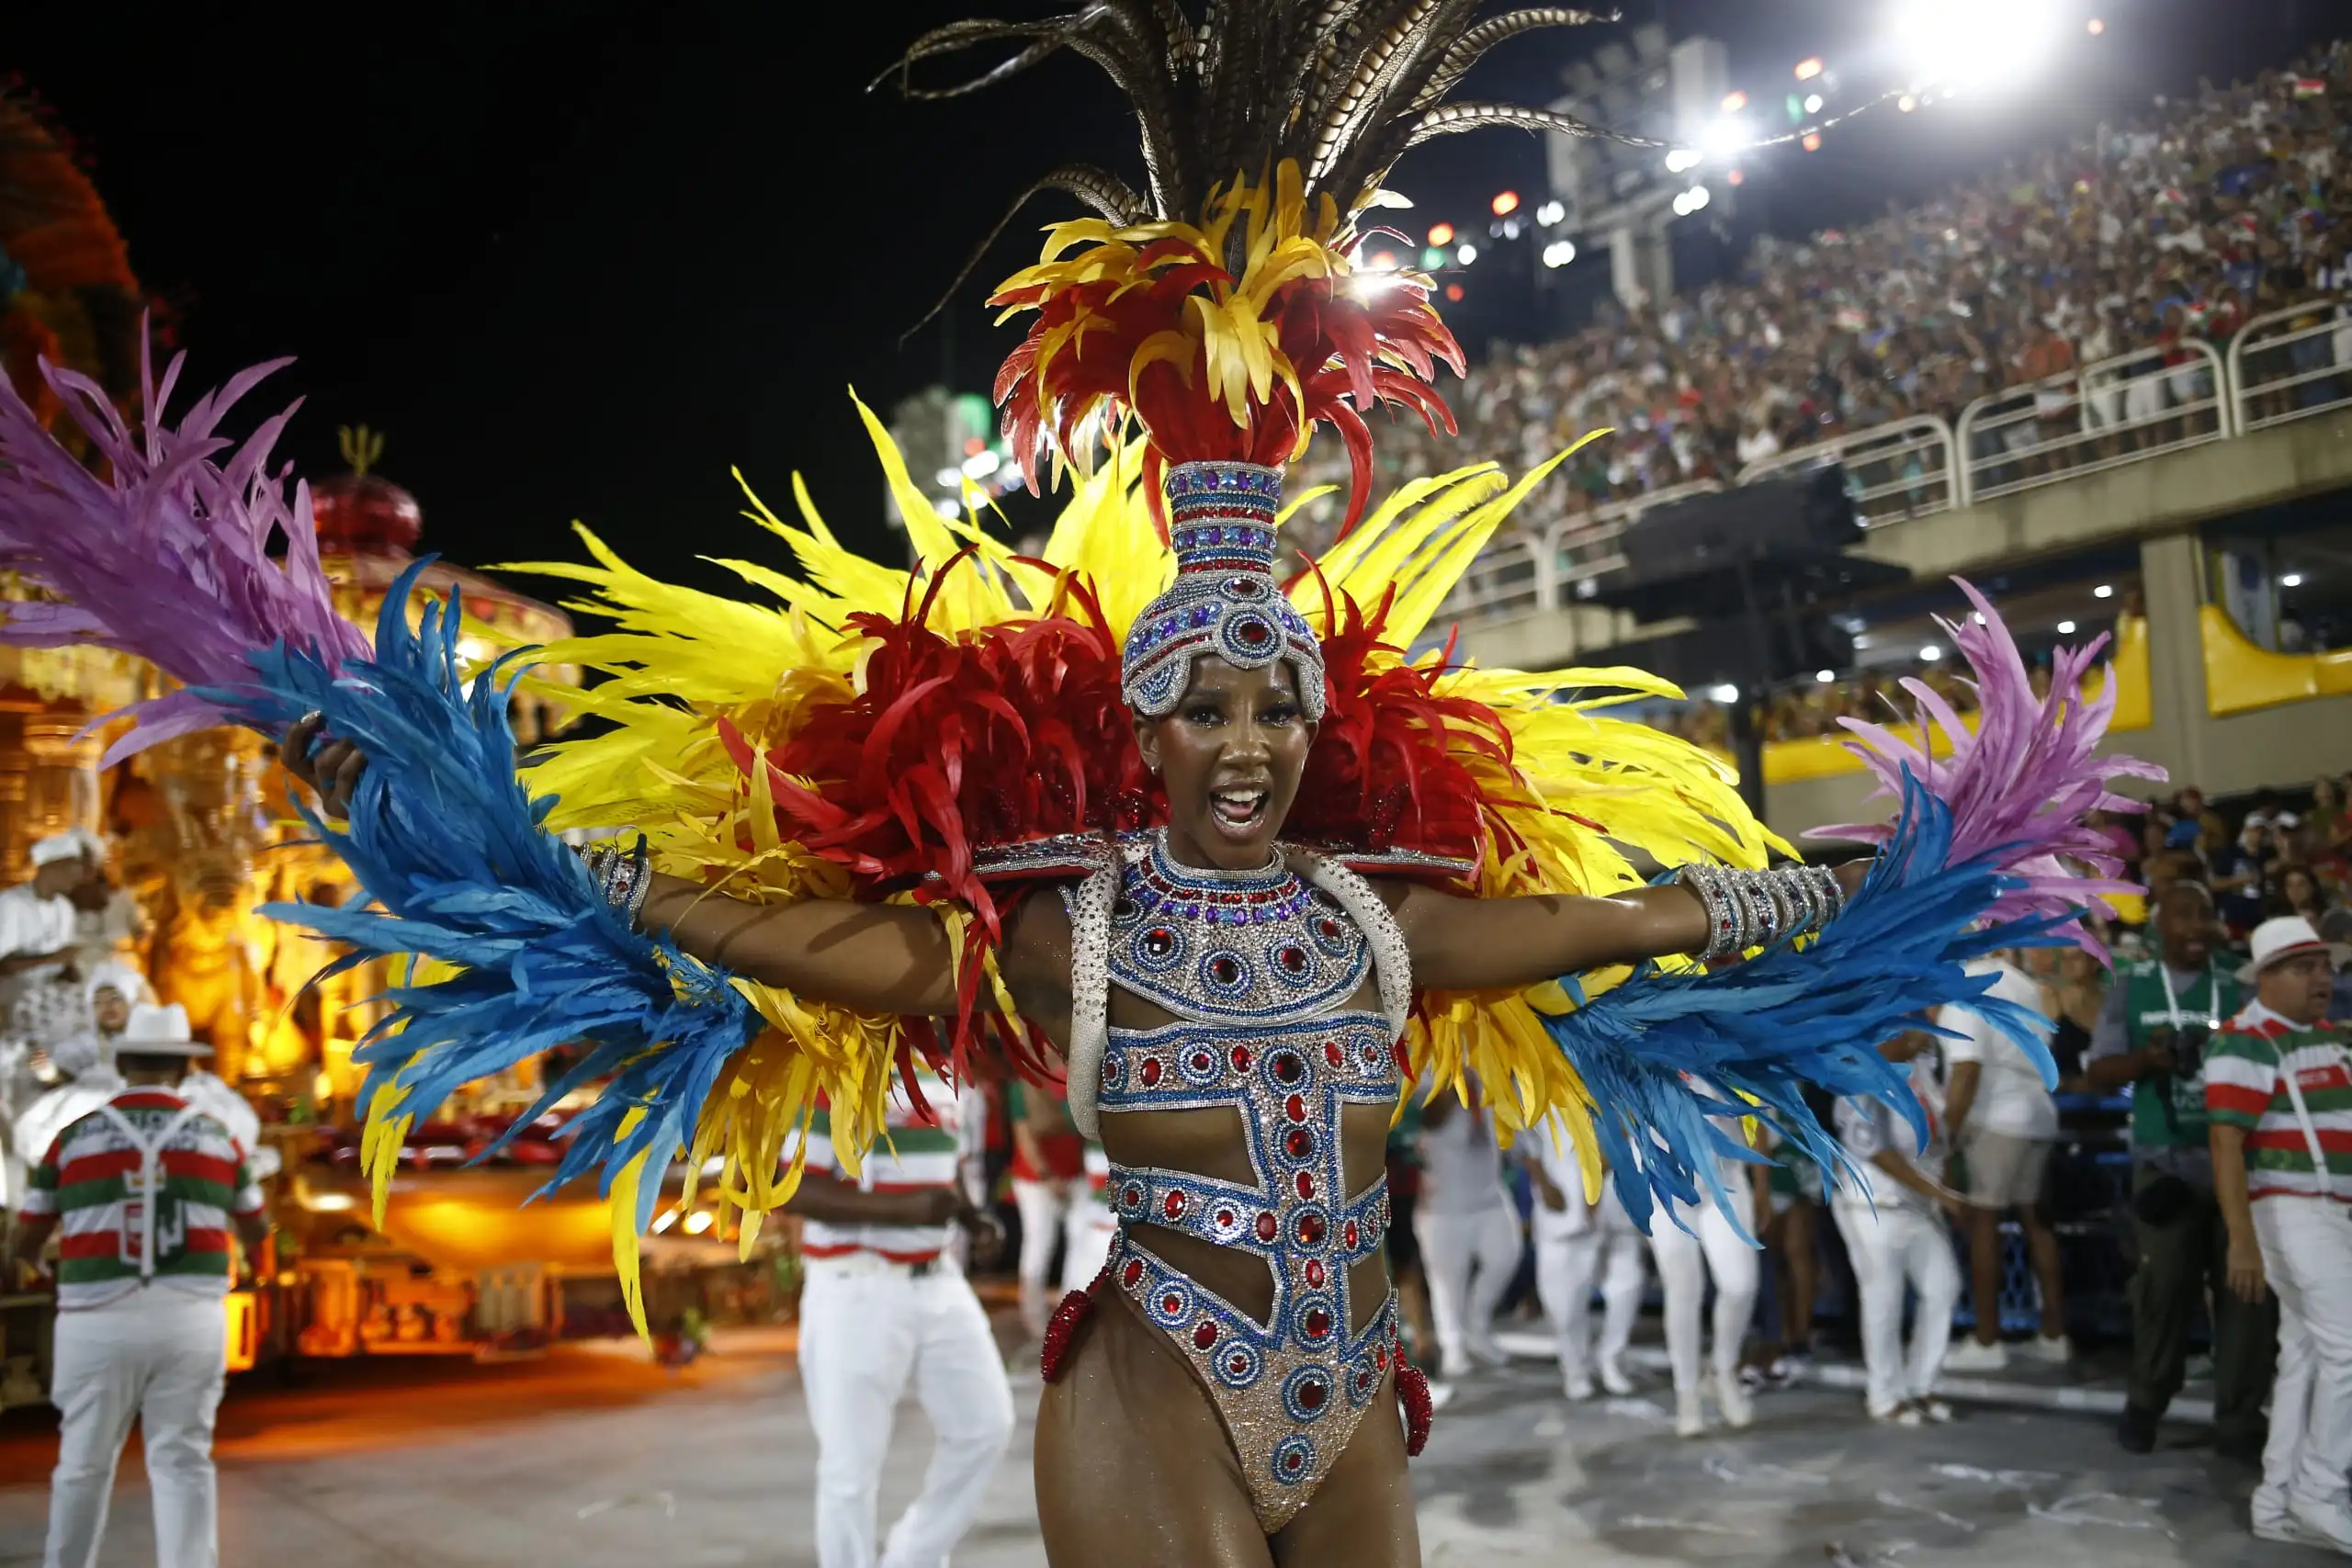 Rio de Janeiro - Favelas, Carnaval, Samba